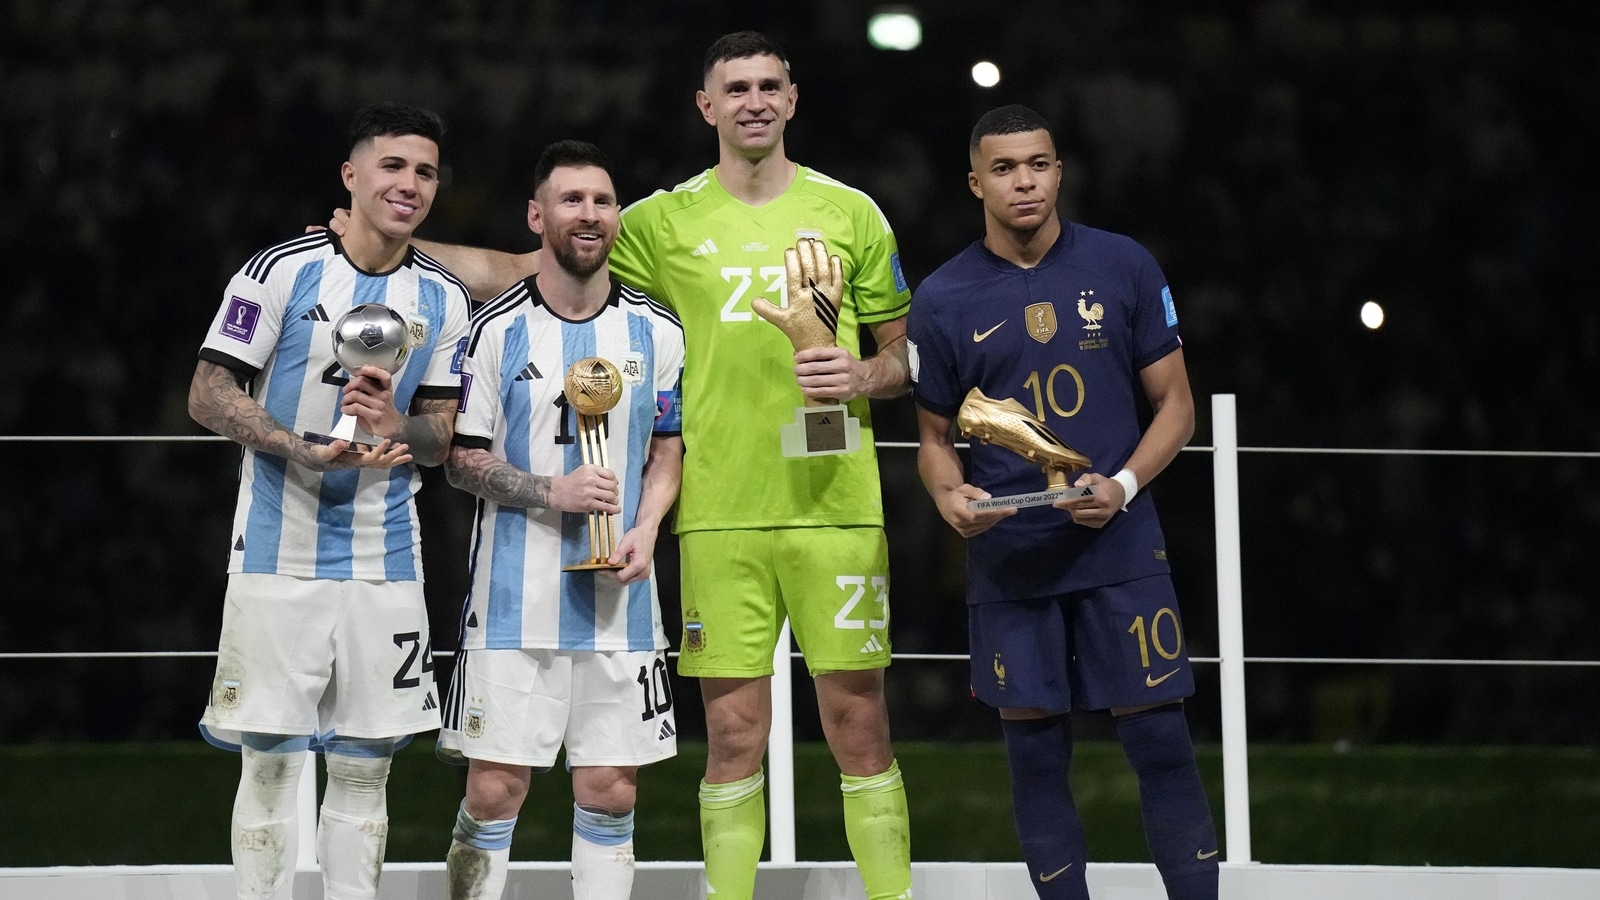 De Messi à Mbappé : qui a remporté les Golden Boot, Golden Ball et Golden Glove Awards ?  |  Nouvelles du football